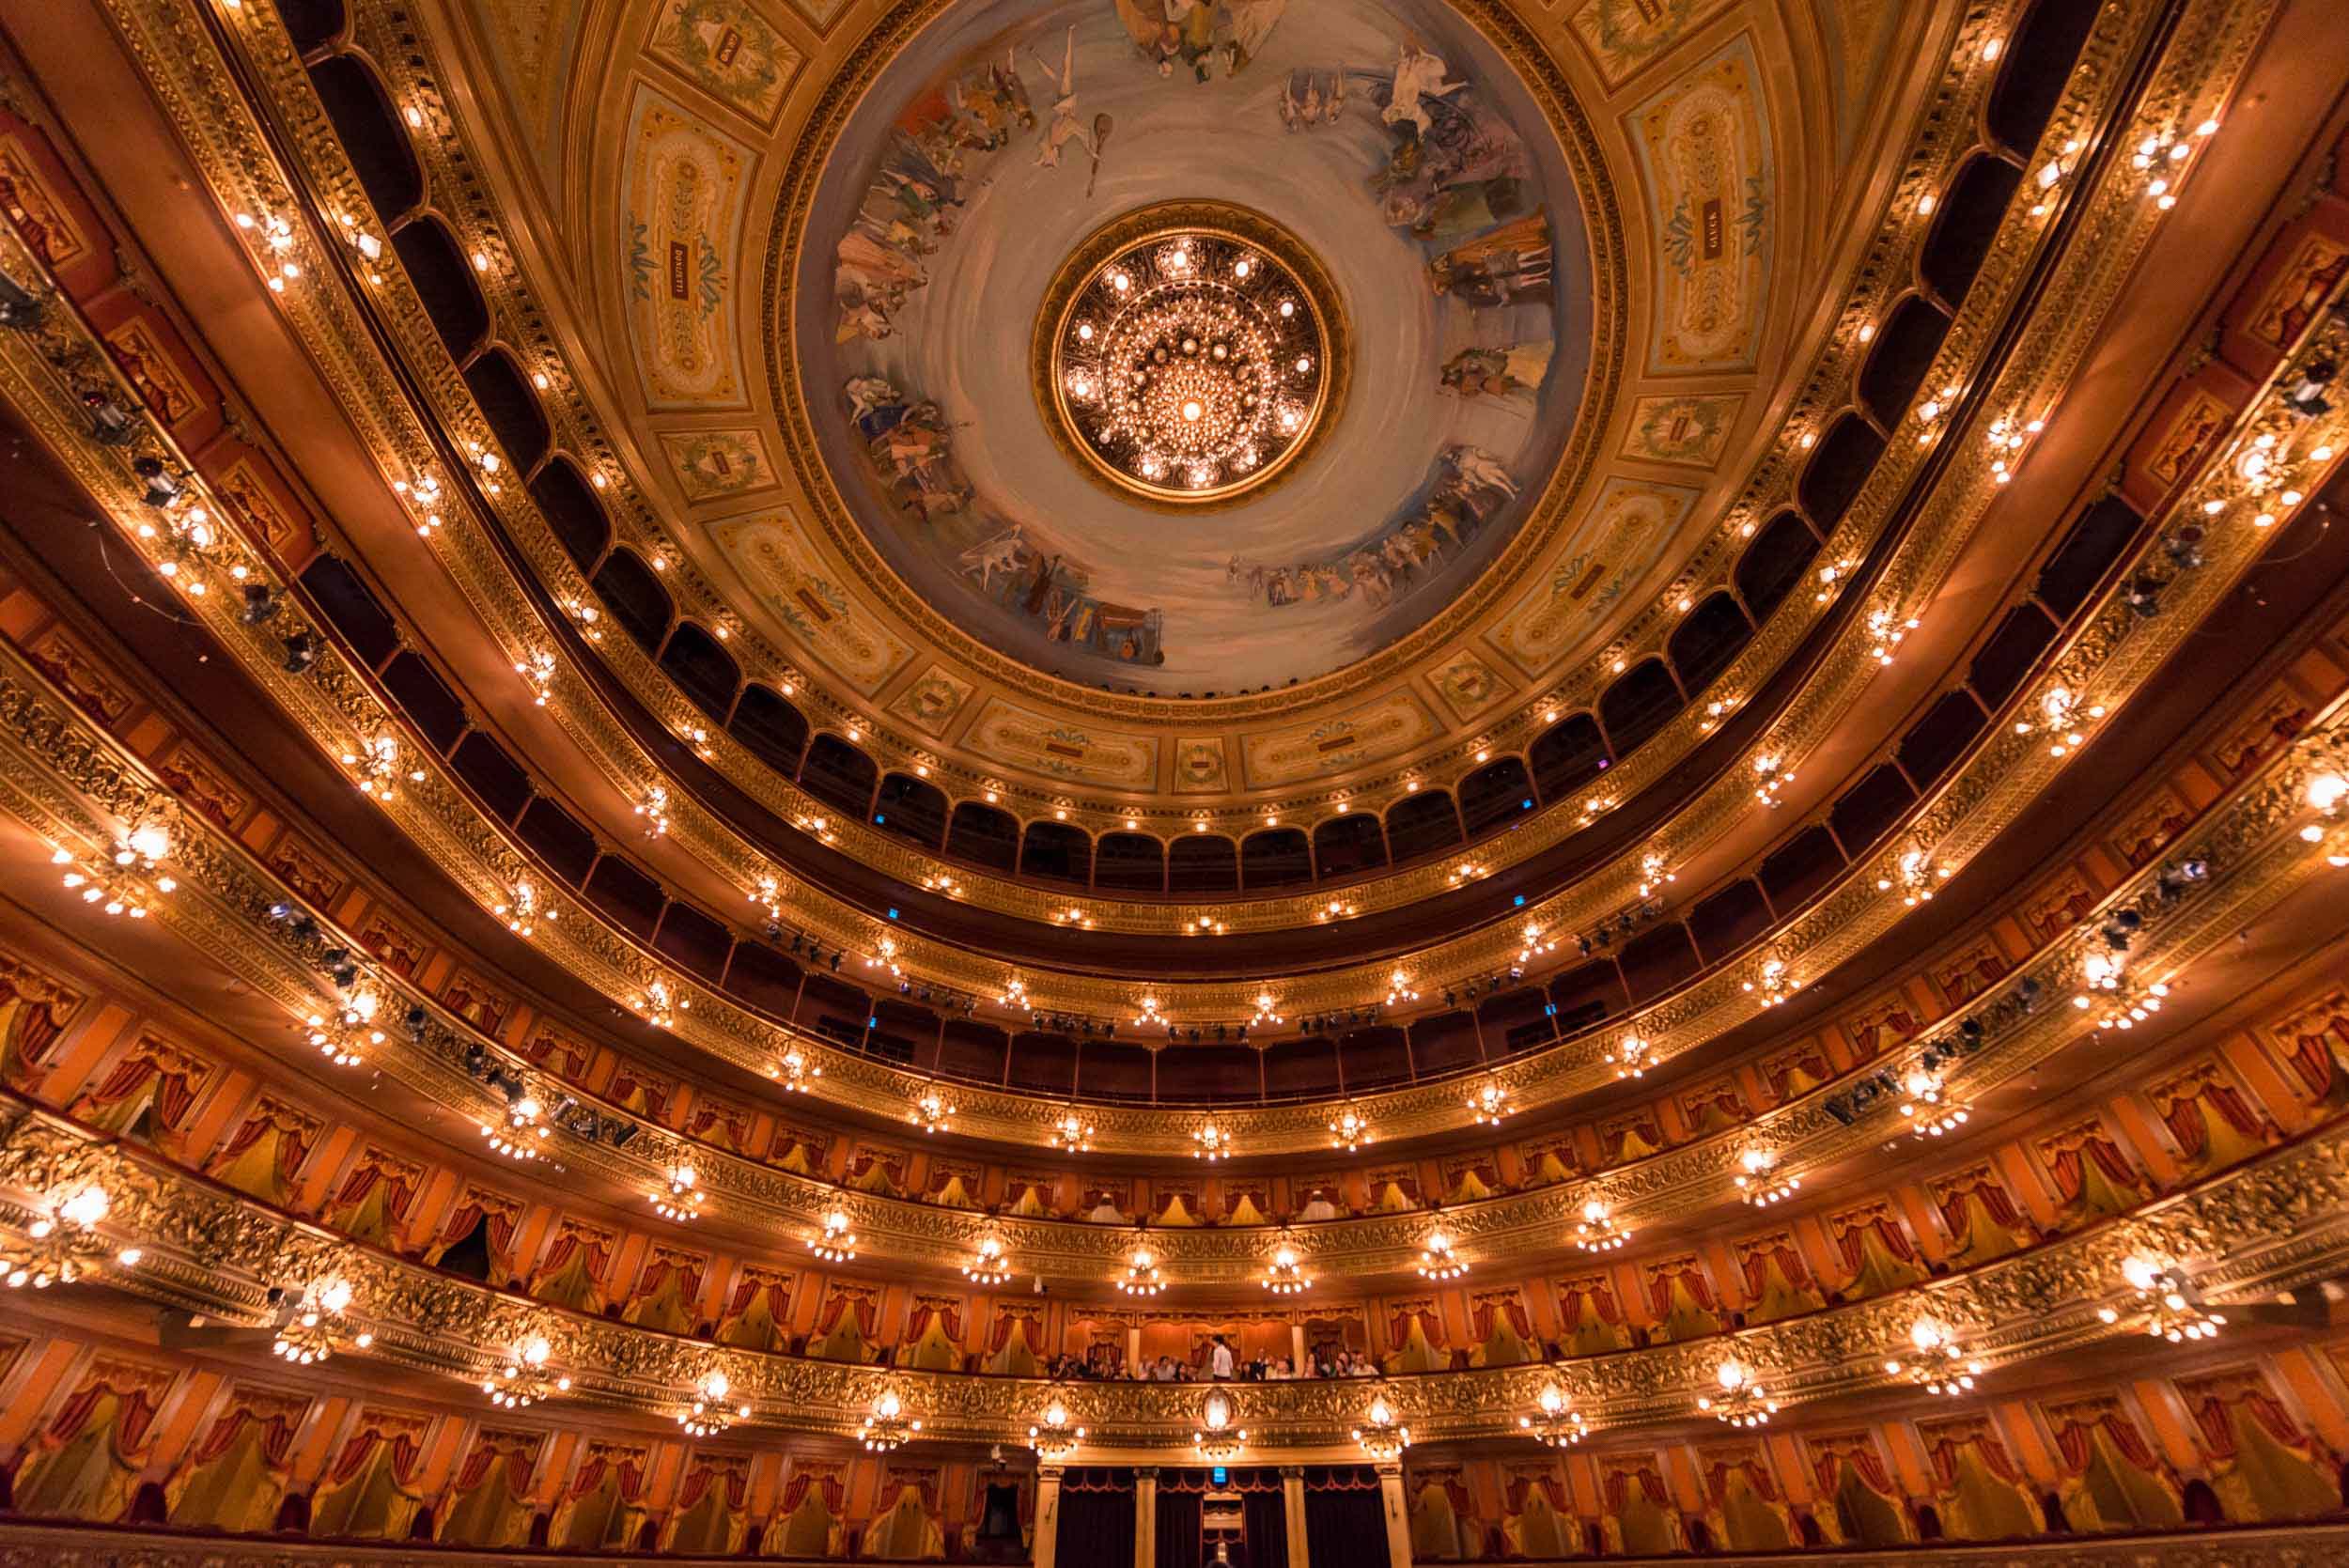 theatre-interior-architecture-buenos-aires-argentina-travel